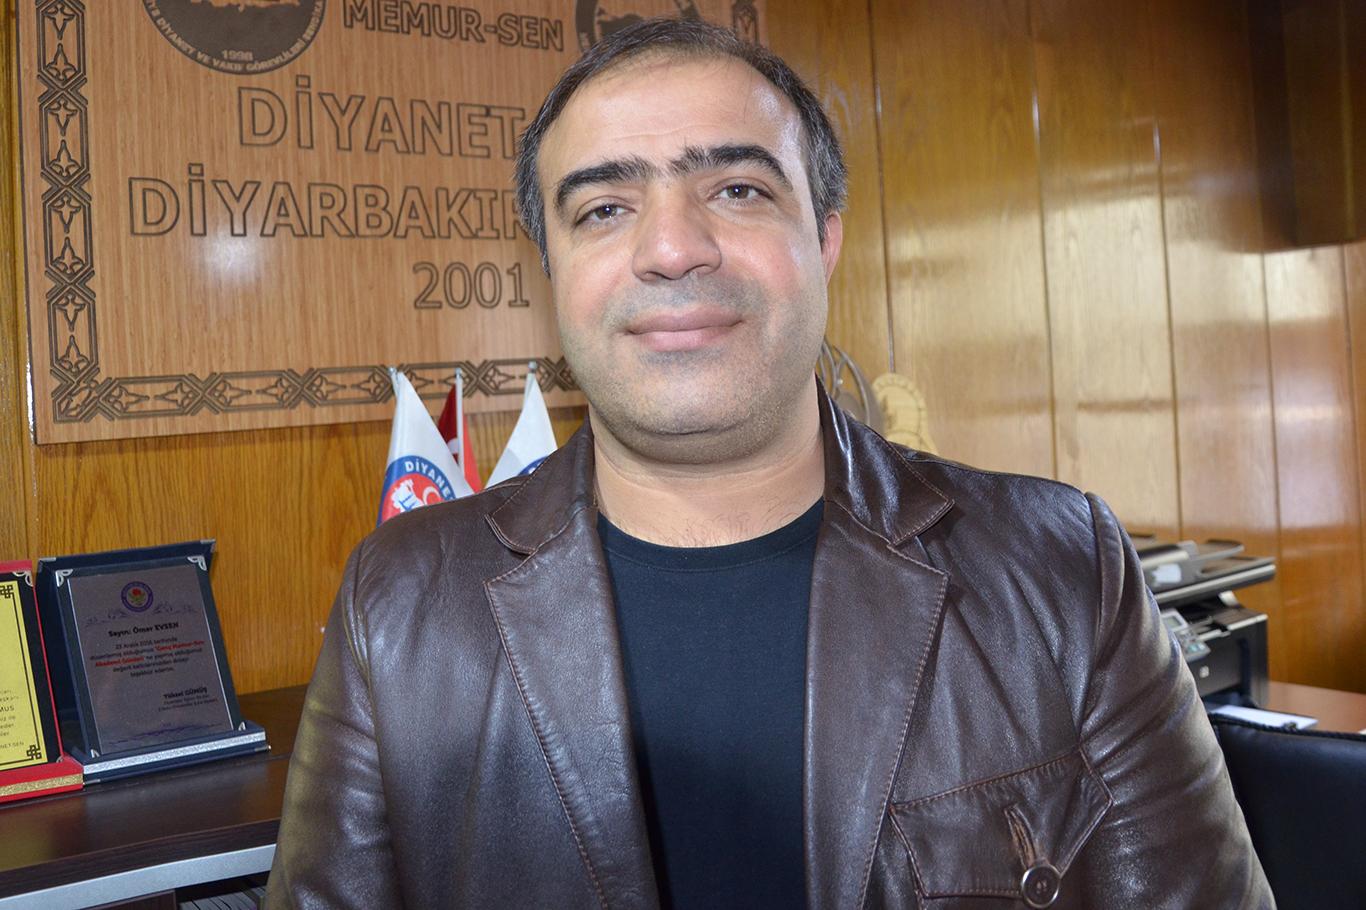 Diyarbakır Diyanet-Sen Şube Başkanı Evsen: "Başörtüsü anayasal güvence altına alınmalı"